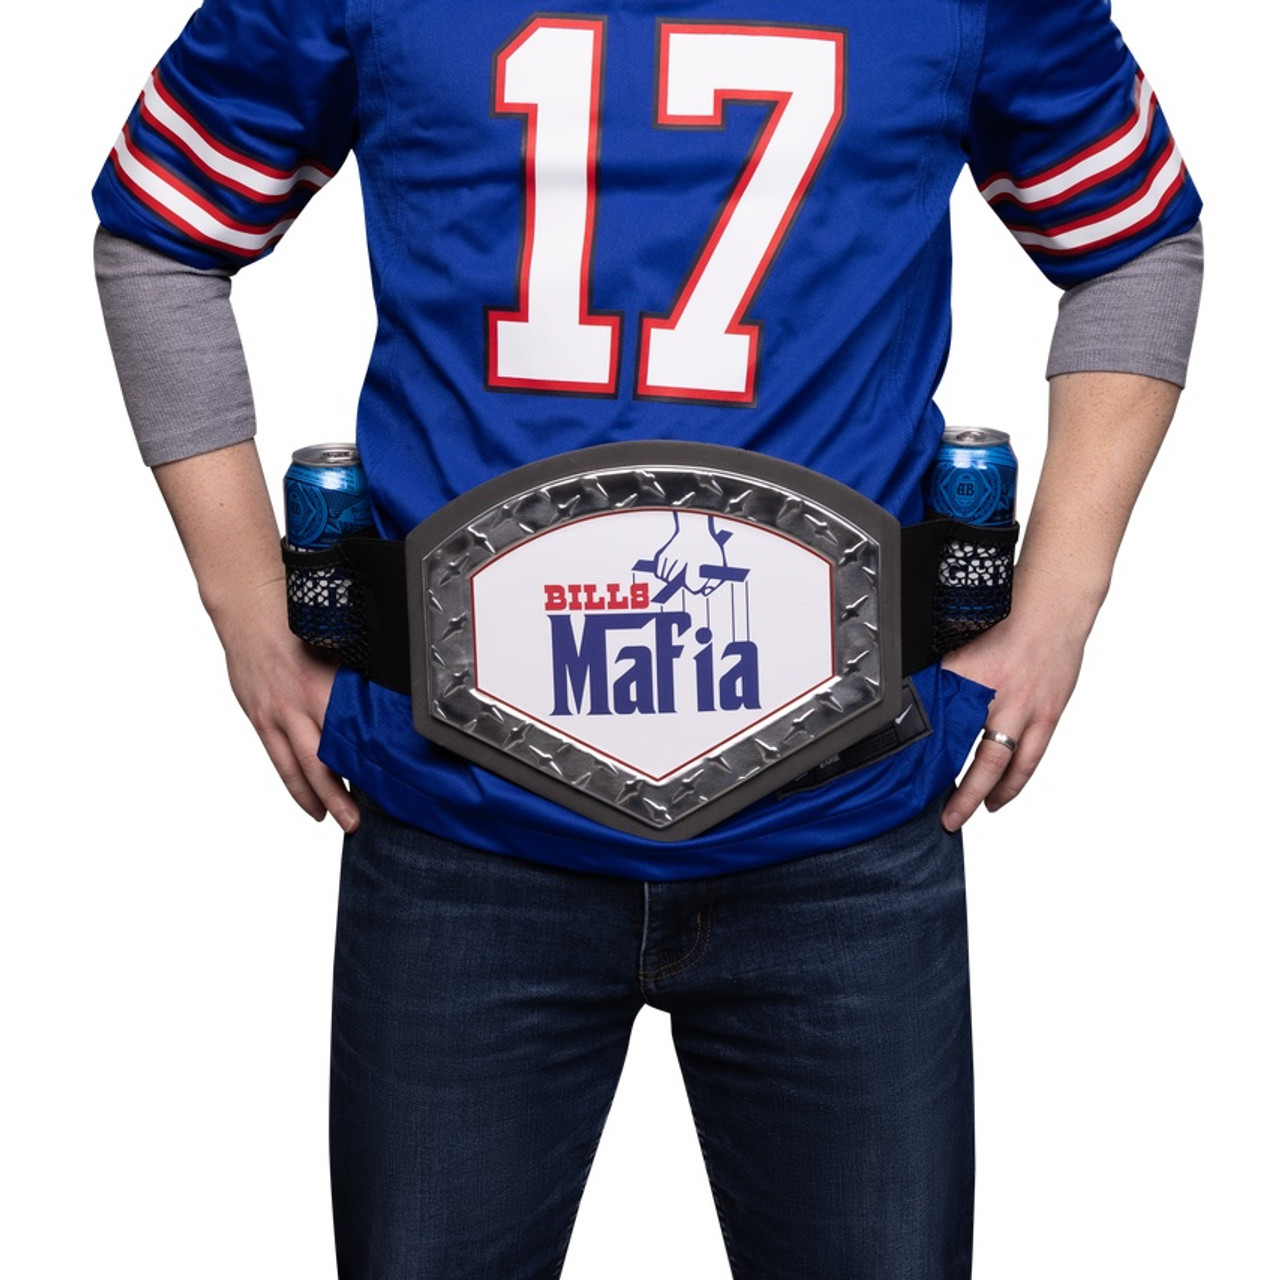 Bills Mafia Gear  Tailgating Buffalo Bills - The Bills Mafia Godfather  Party Belt